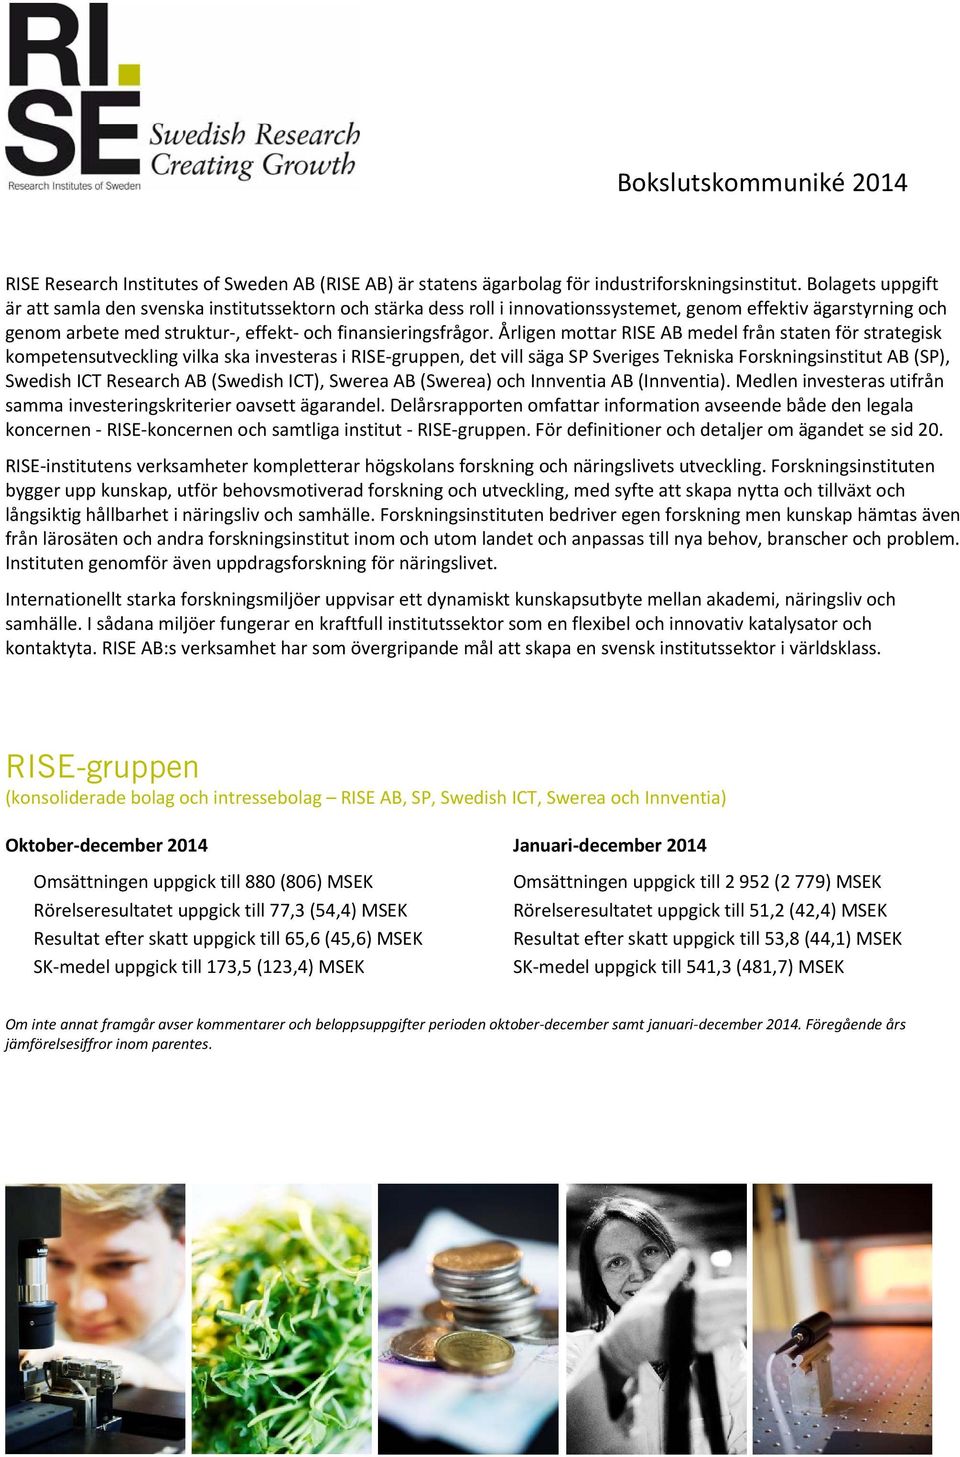 Årligen mottar RISE AB medel från staten för strategisk kompetensutveckling vilka ska investeras i RISE gruppen, det vill säga SP Sveriges Tekniska Forskningsinstitut AB (SP), Swedish ICT Research AB